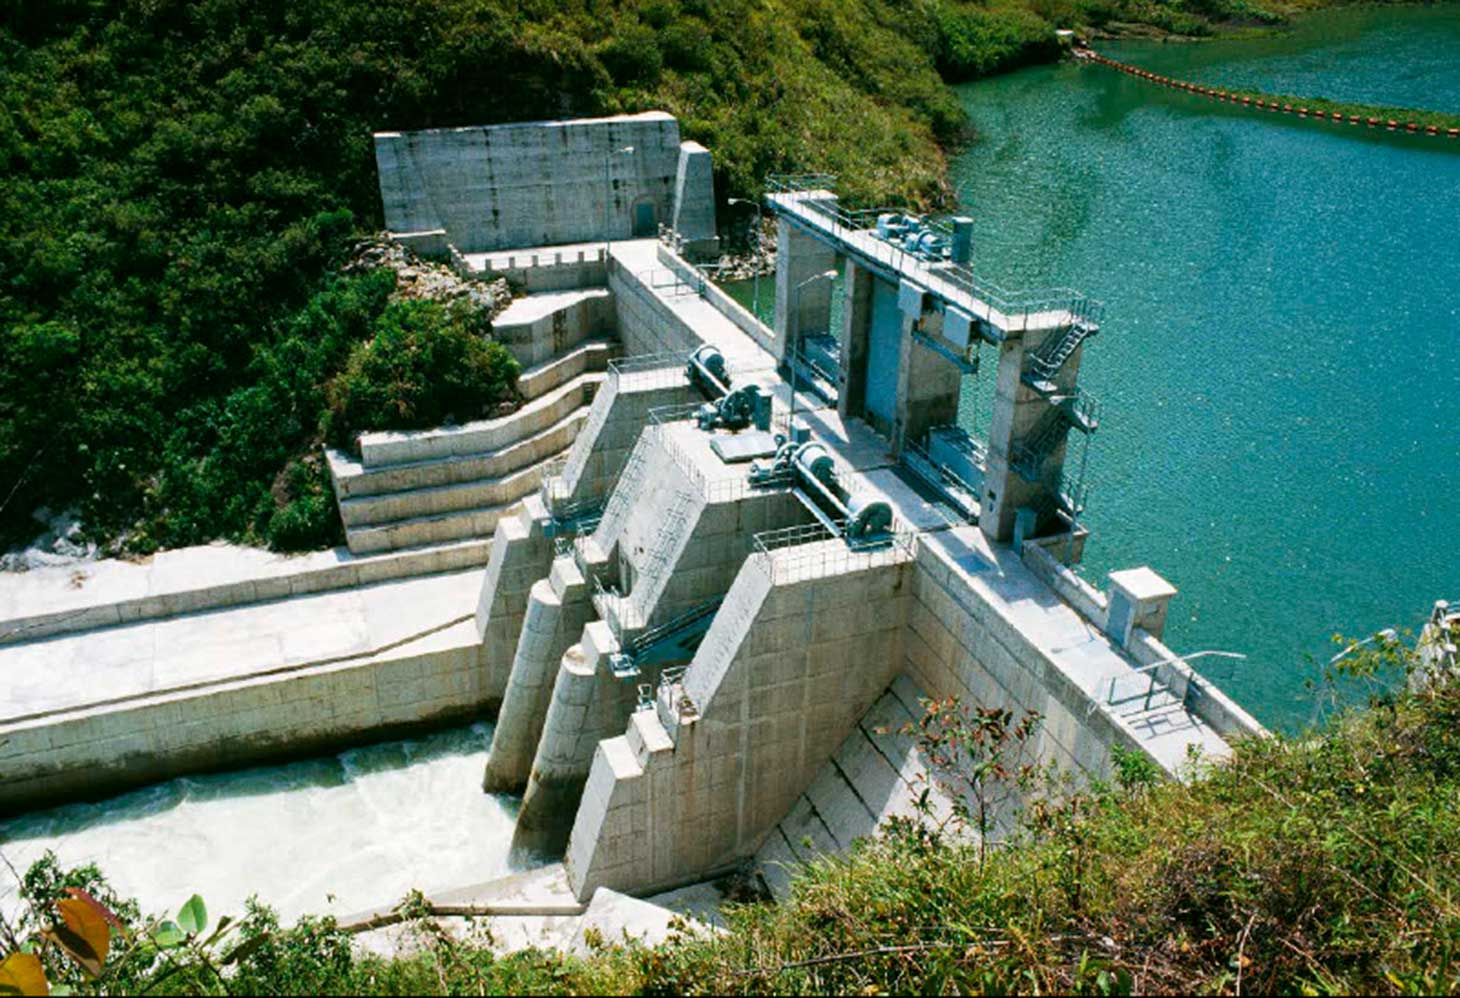 Photo 3: Regulating Dam